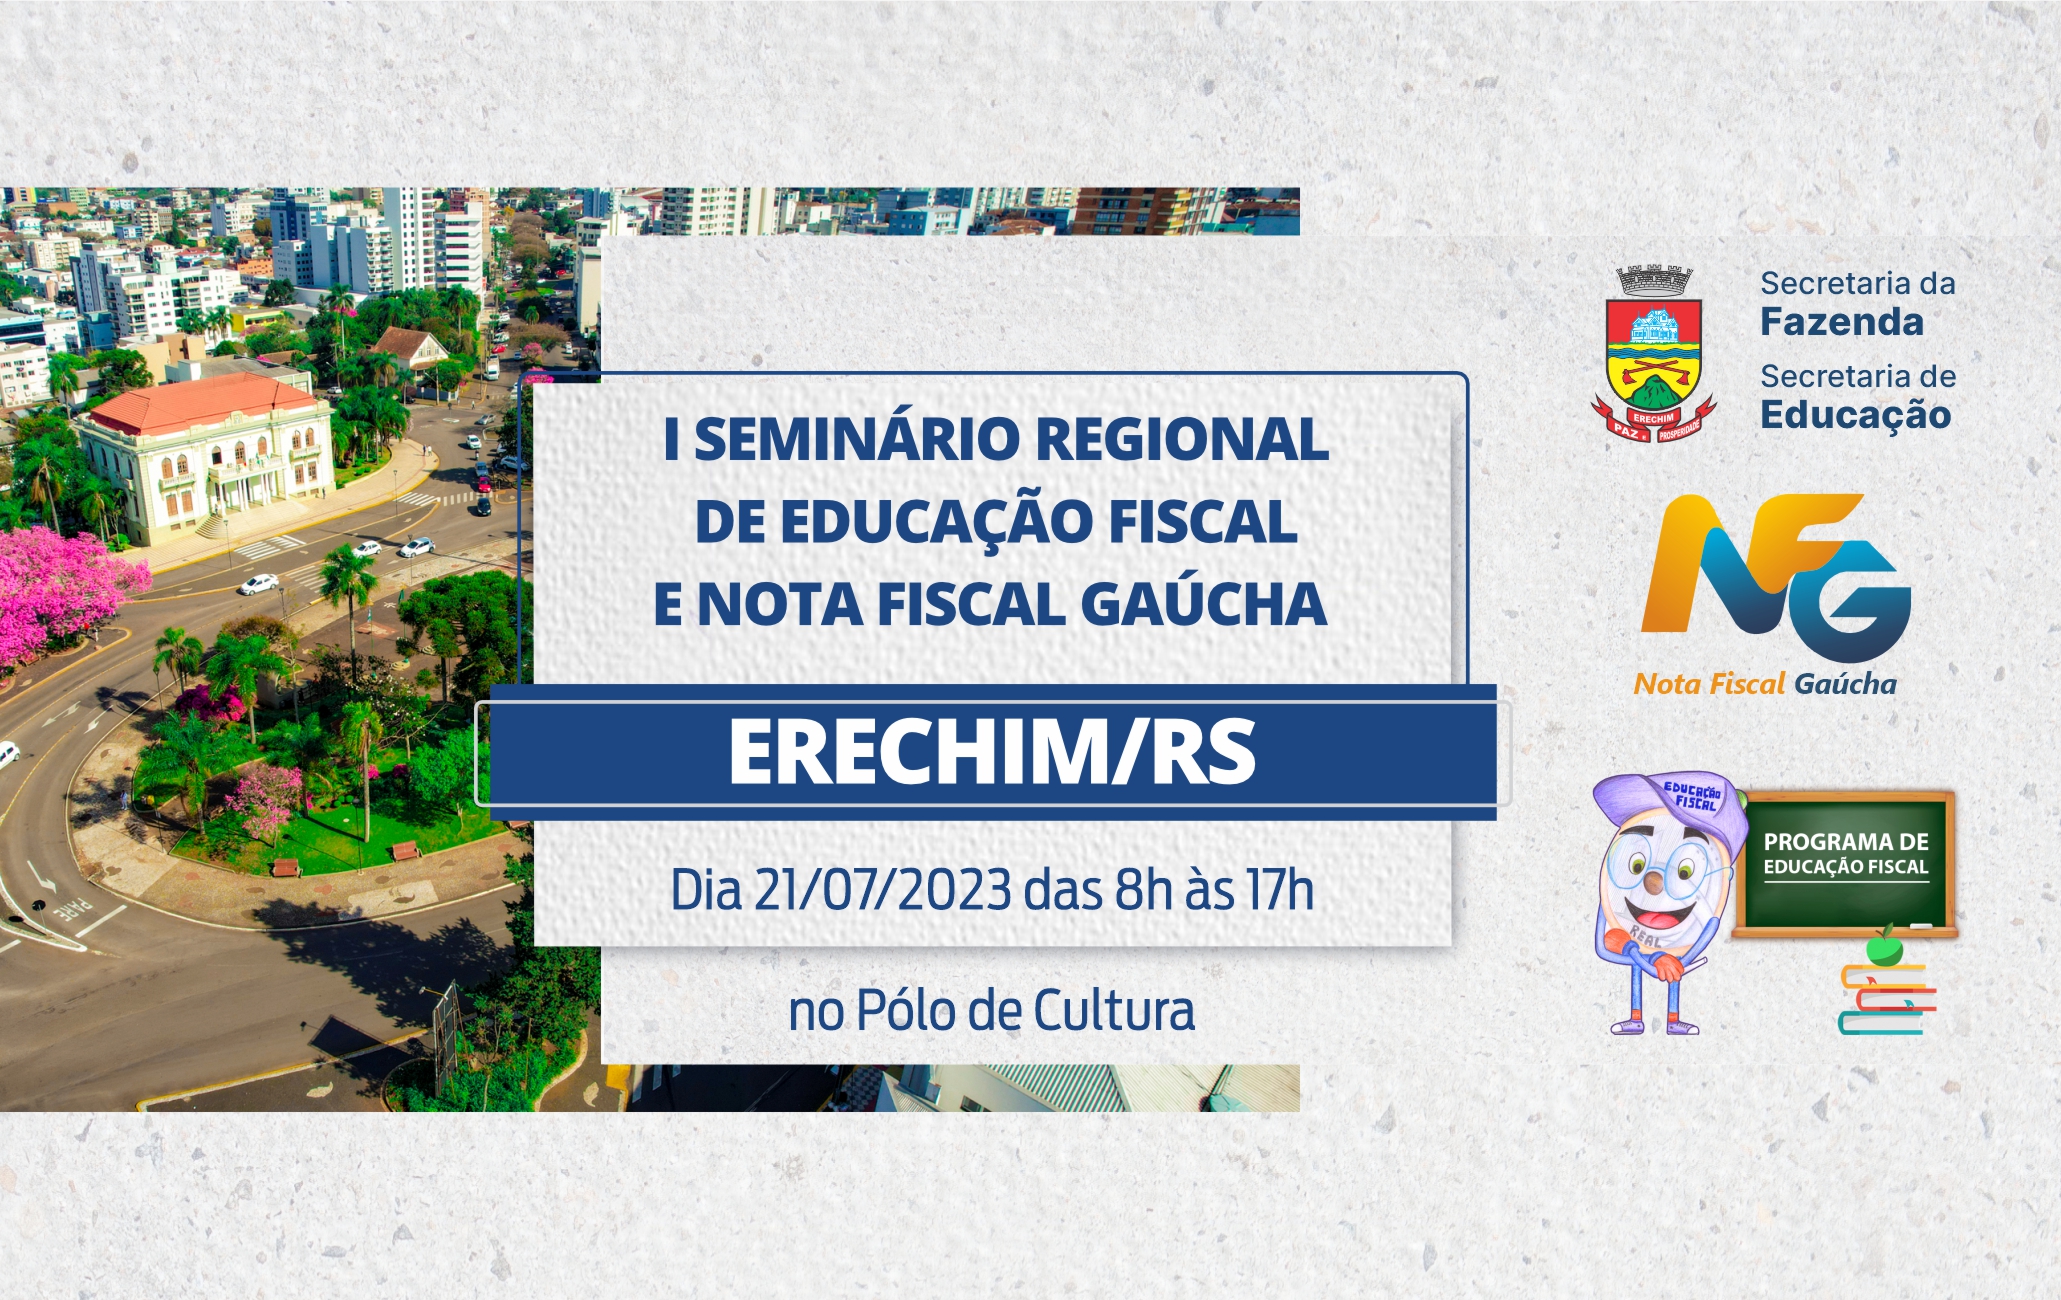 Inscricoes abertas para o Seminario Regional de Educacao Fiscal e Nota Fiscal Gaucha de Erechim